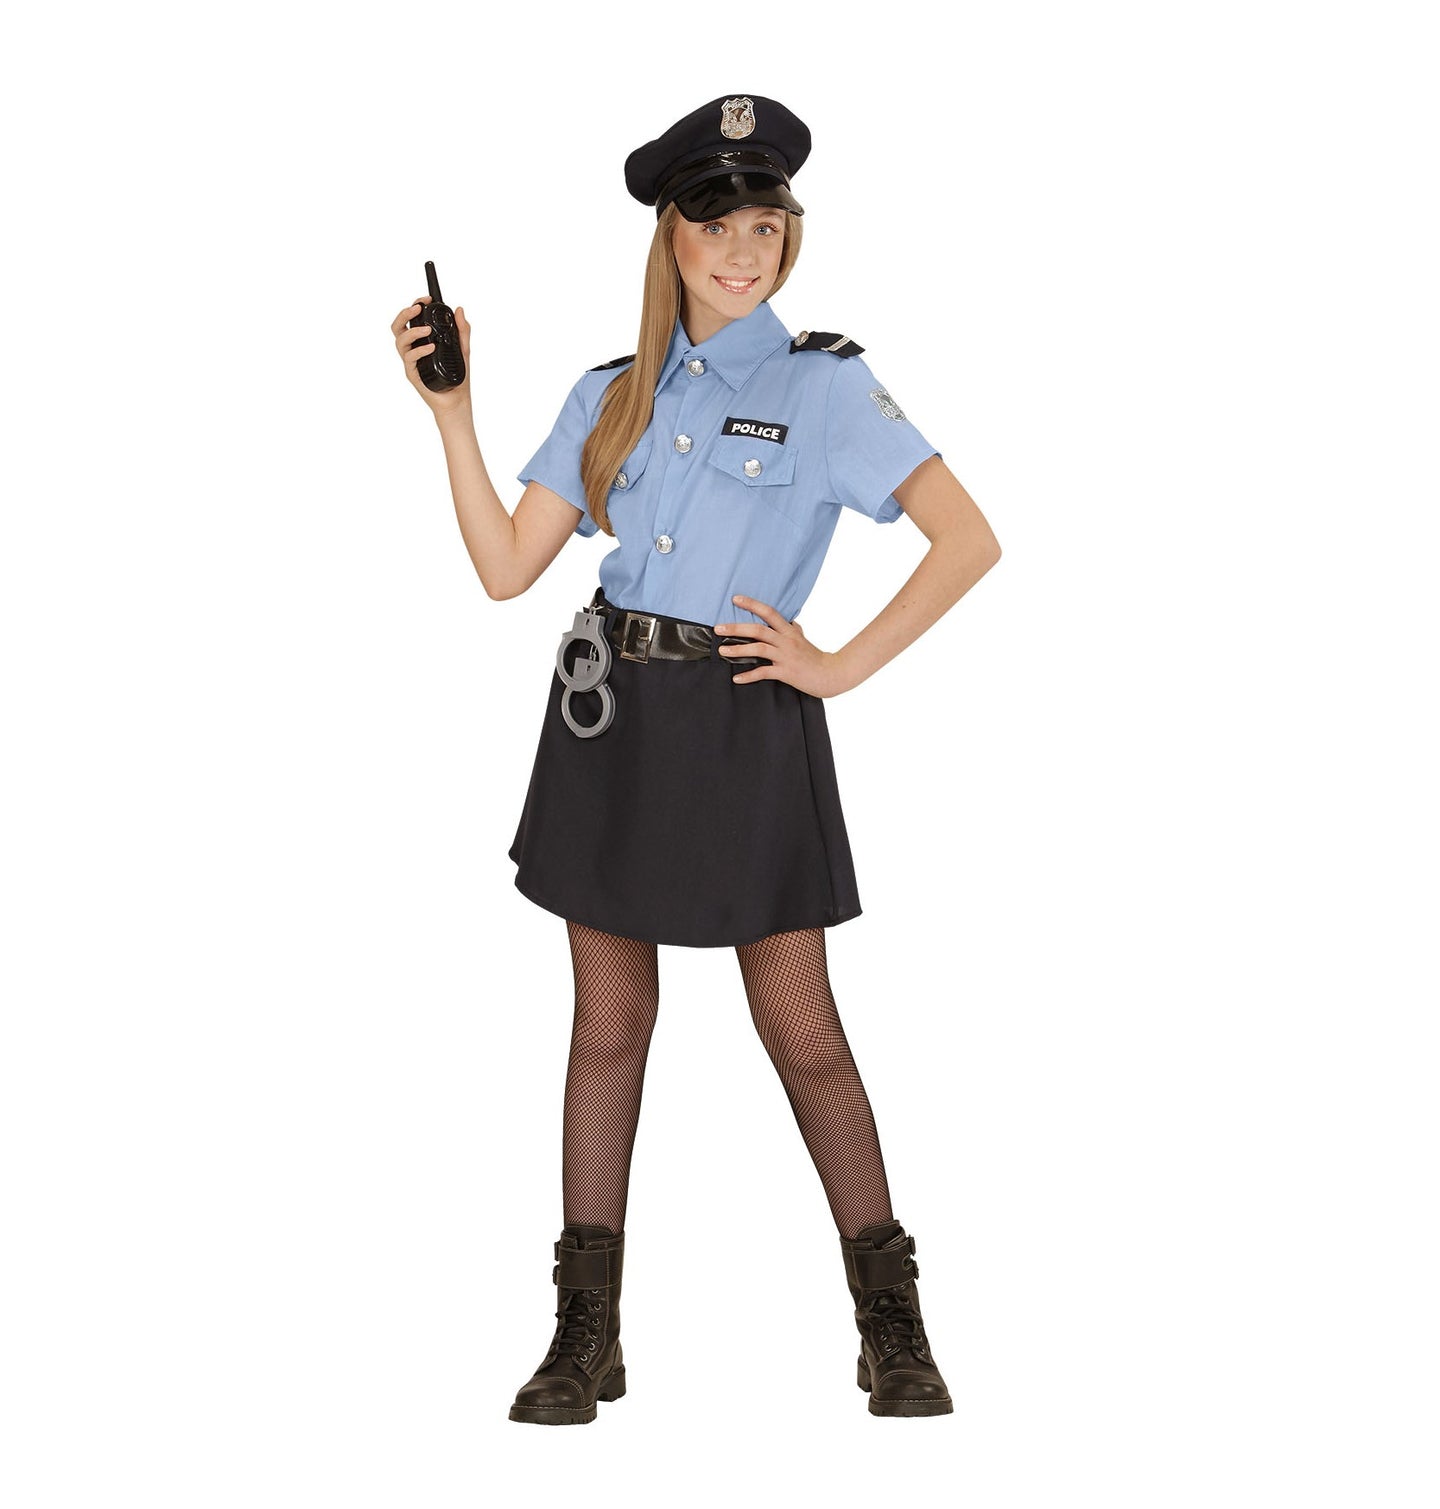 Police Girl Officer costume